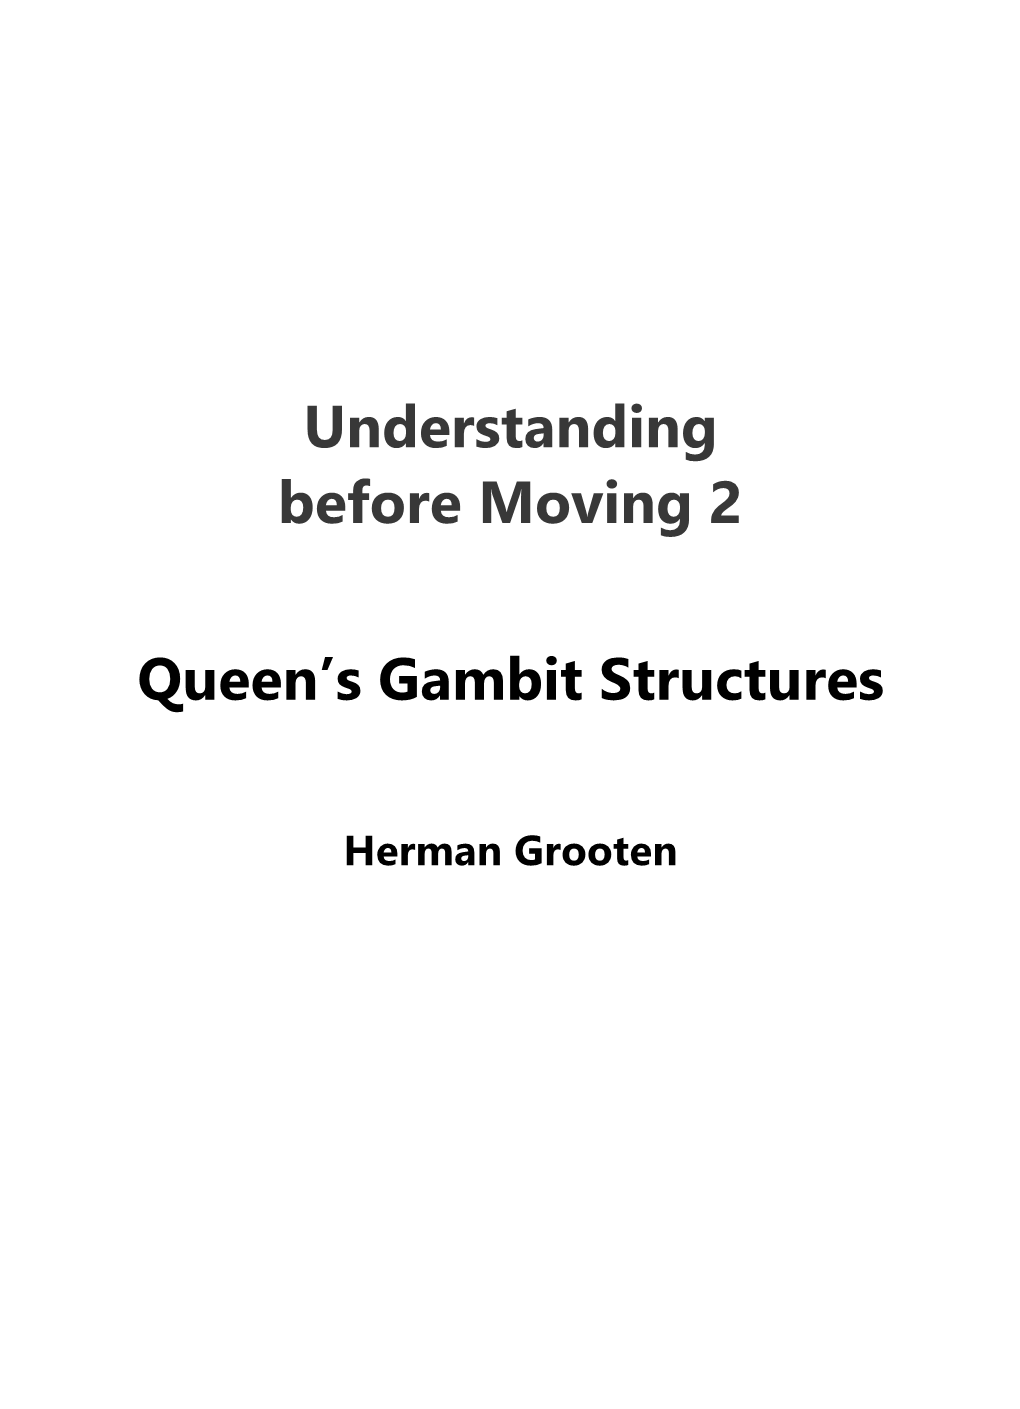 Understanding Before Moving 2 Queen's Gambit Structures